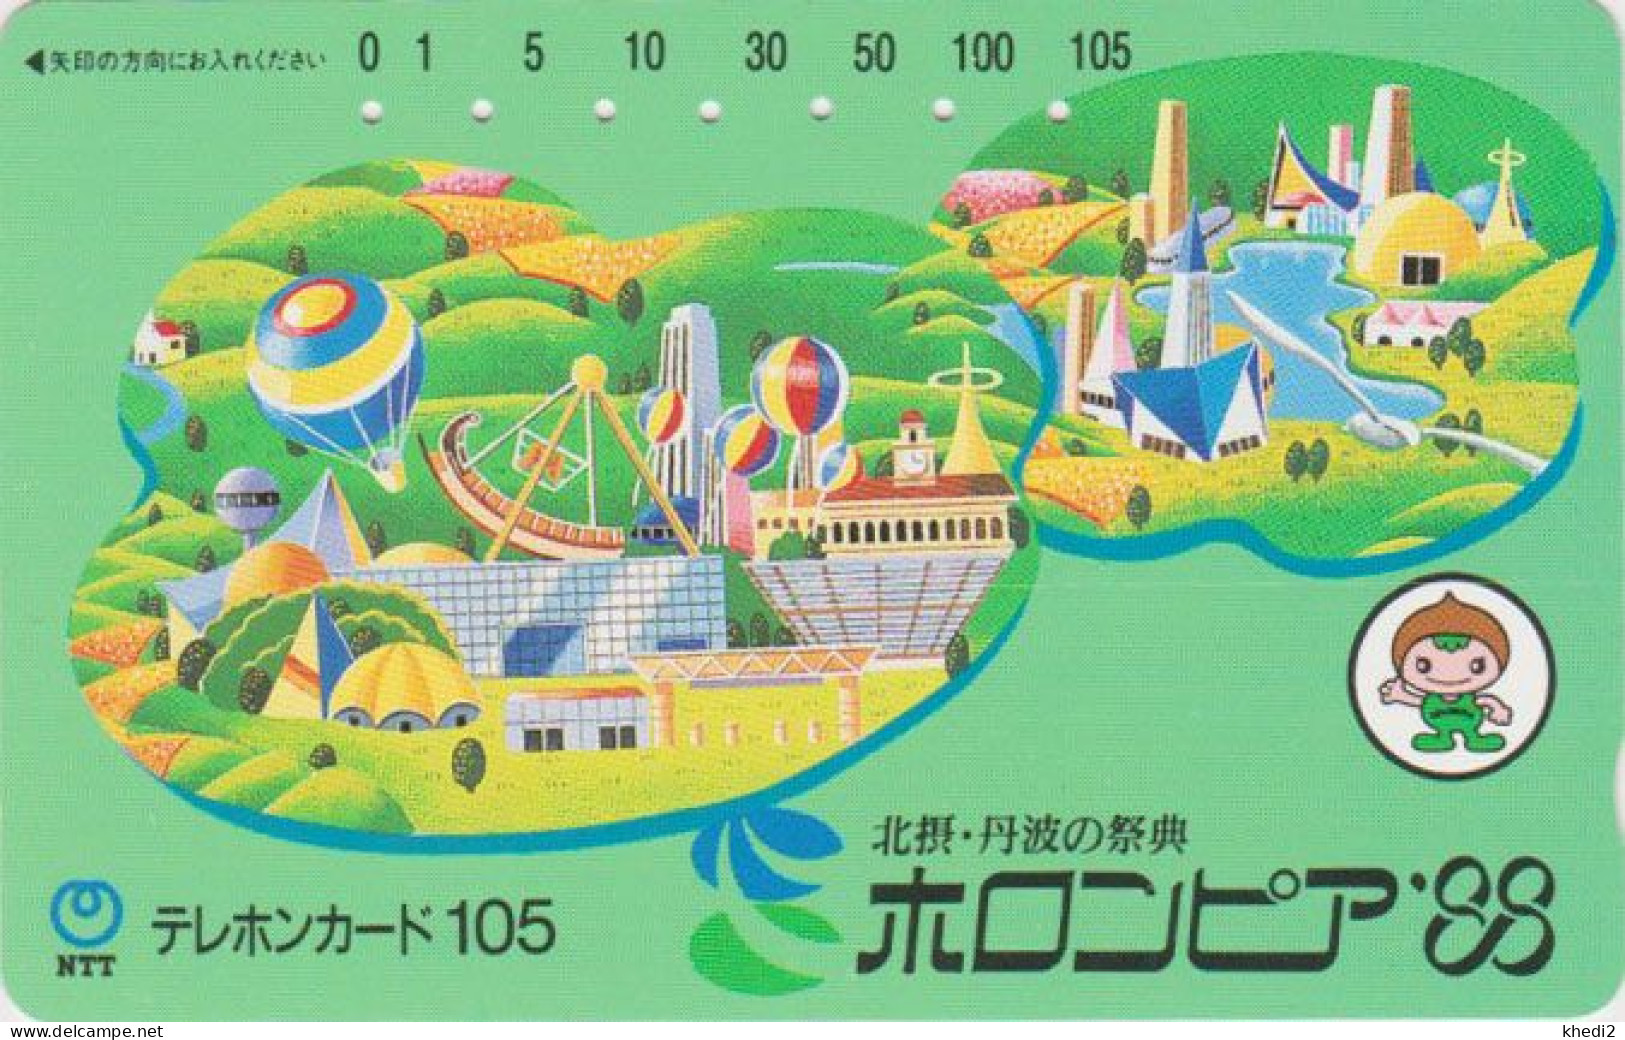 RARE Télécarte JAPON / NTT 330-079 -  Parc D'attraction & MONTGOLFIERE - Amusement Park Balloon JAPAN Phonecard / ATT - Japon